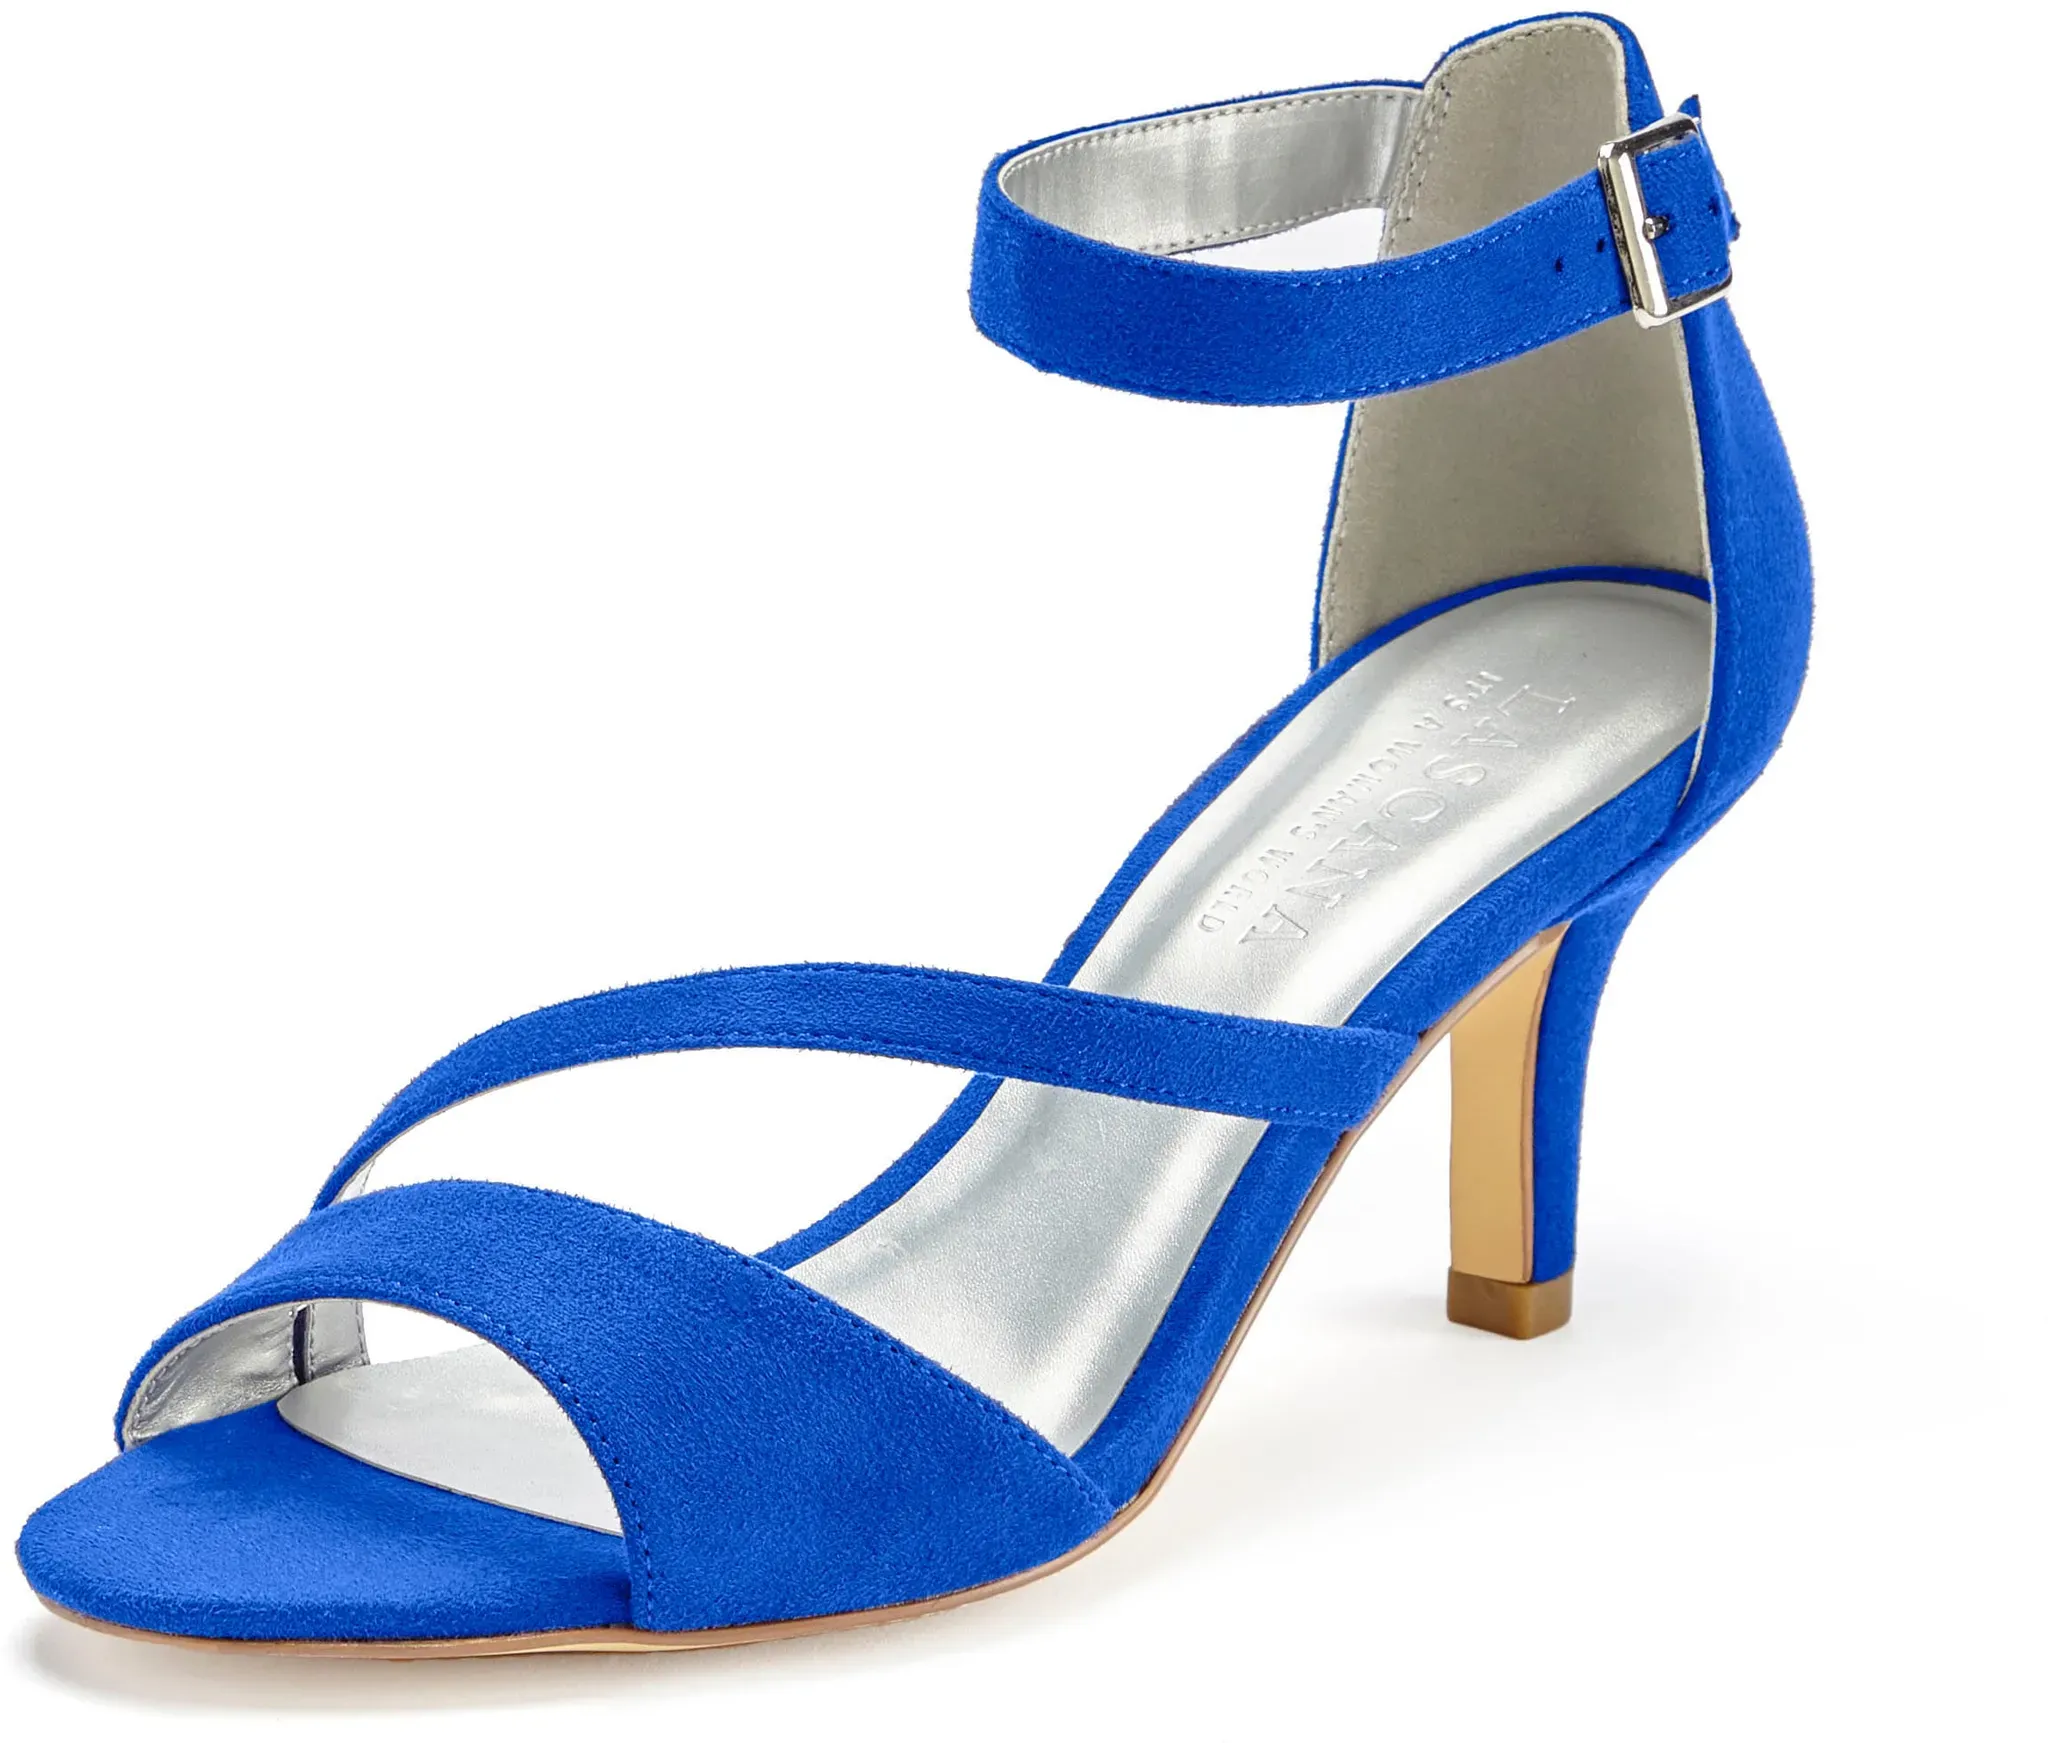 Sandalette LASCANA "High-Heel-Sandalette, Riemchensandalette" Gr. 39, blau (royalblau) Damen Schuhe Sandalette Riemchensandale Sandaletten